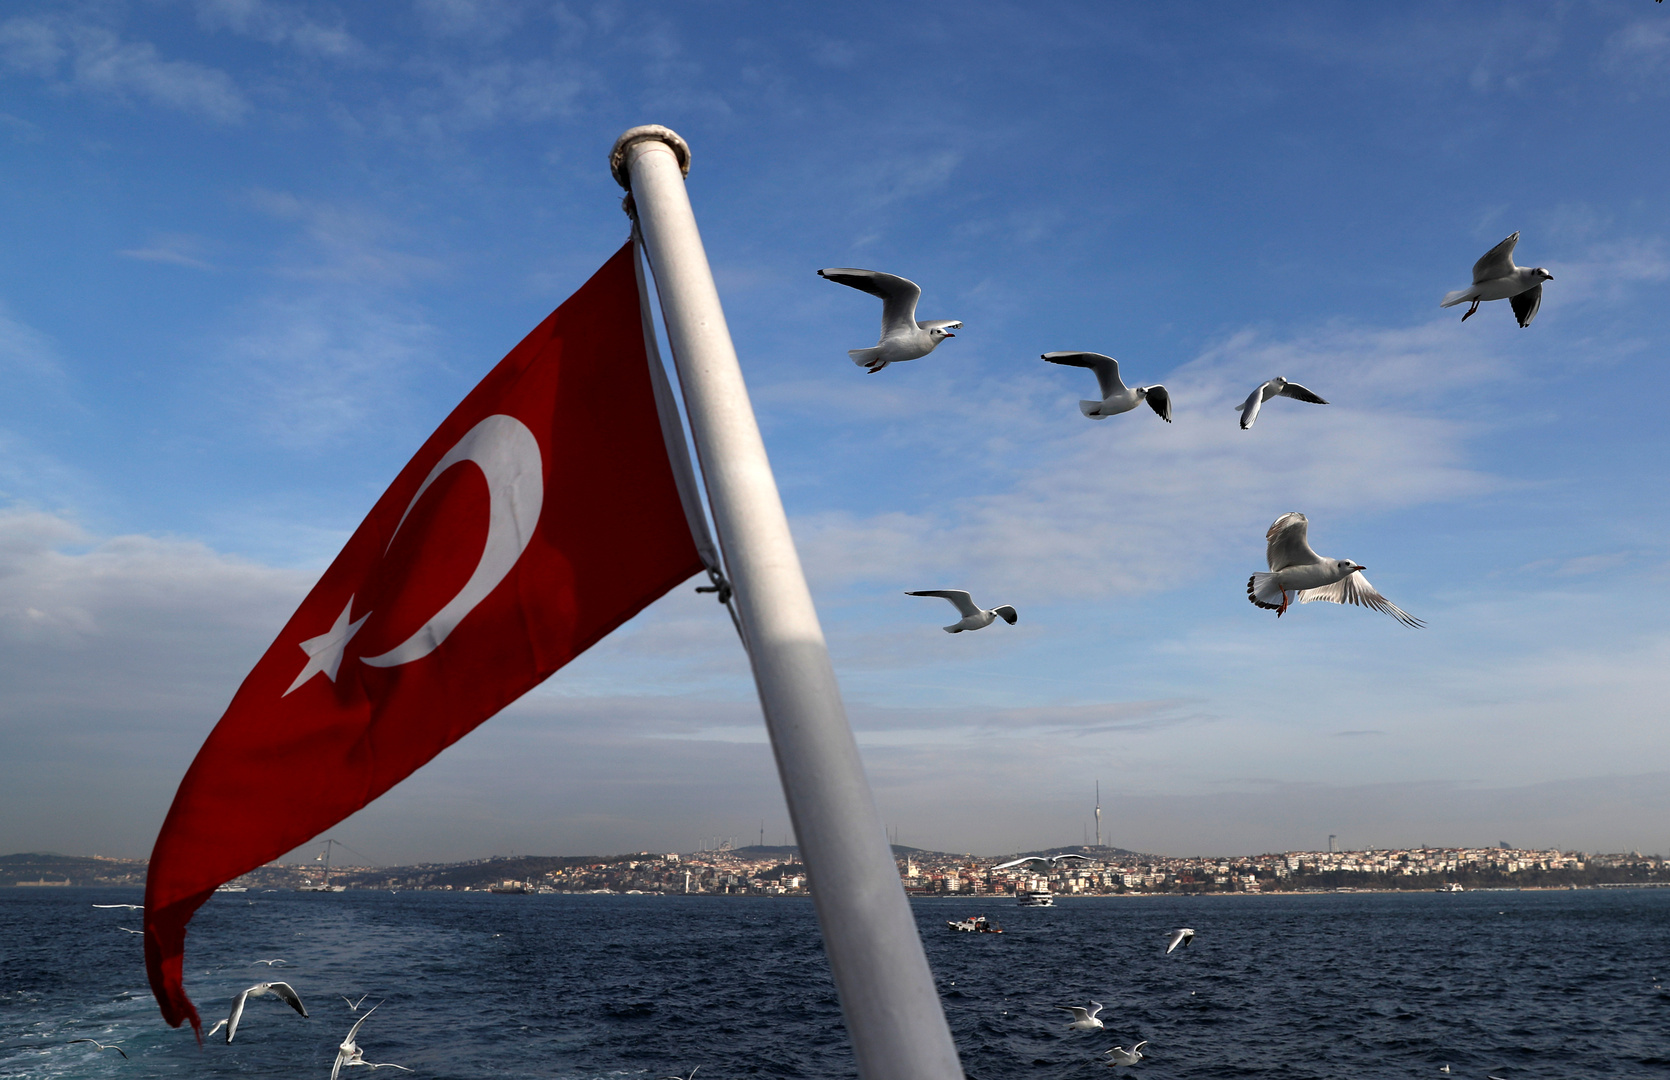 تركيا توجه نداء إلى العالم بعد إعلان حفتر تسلمه مقاليد الحكم في ليبيا